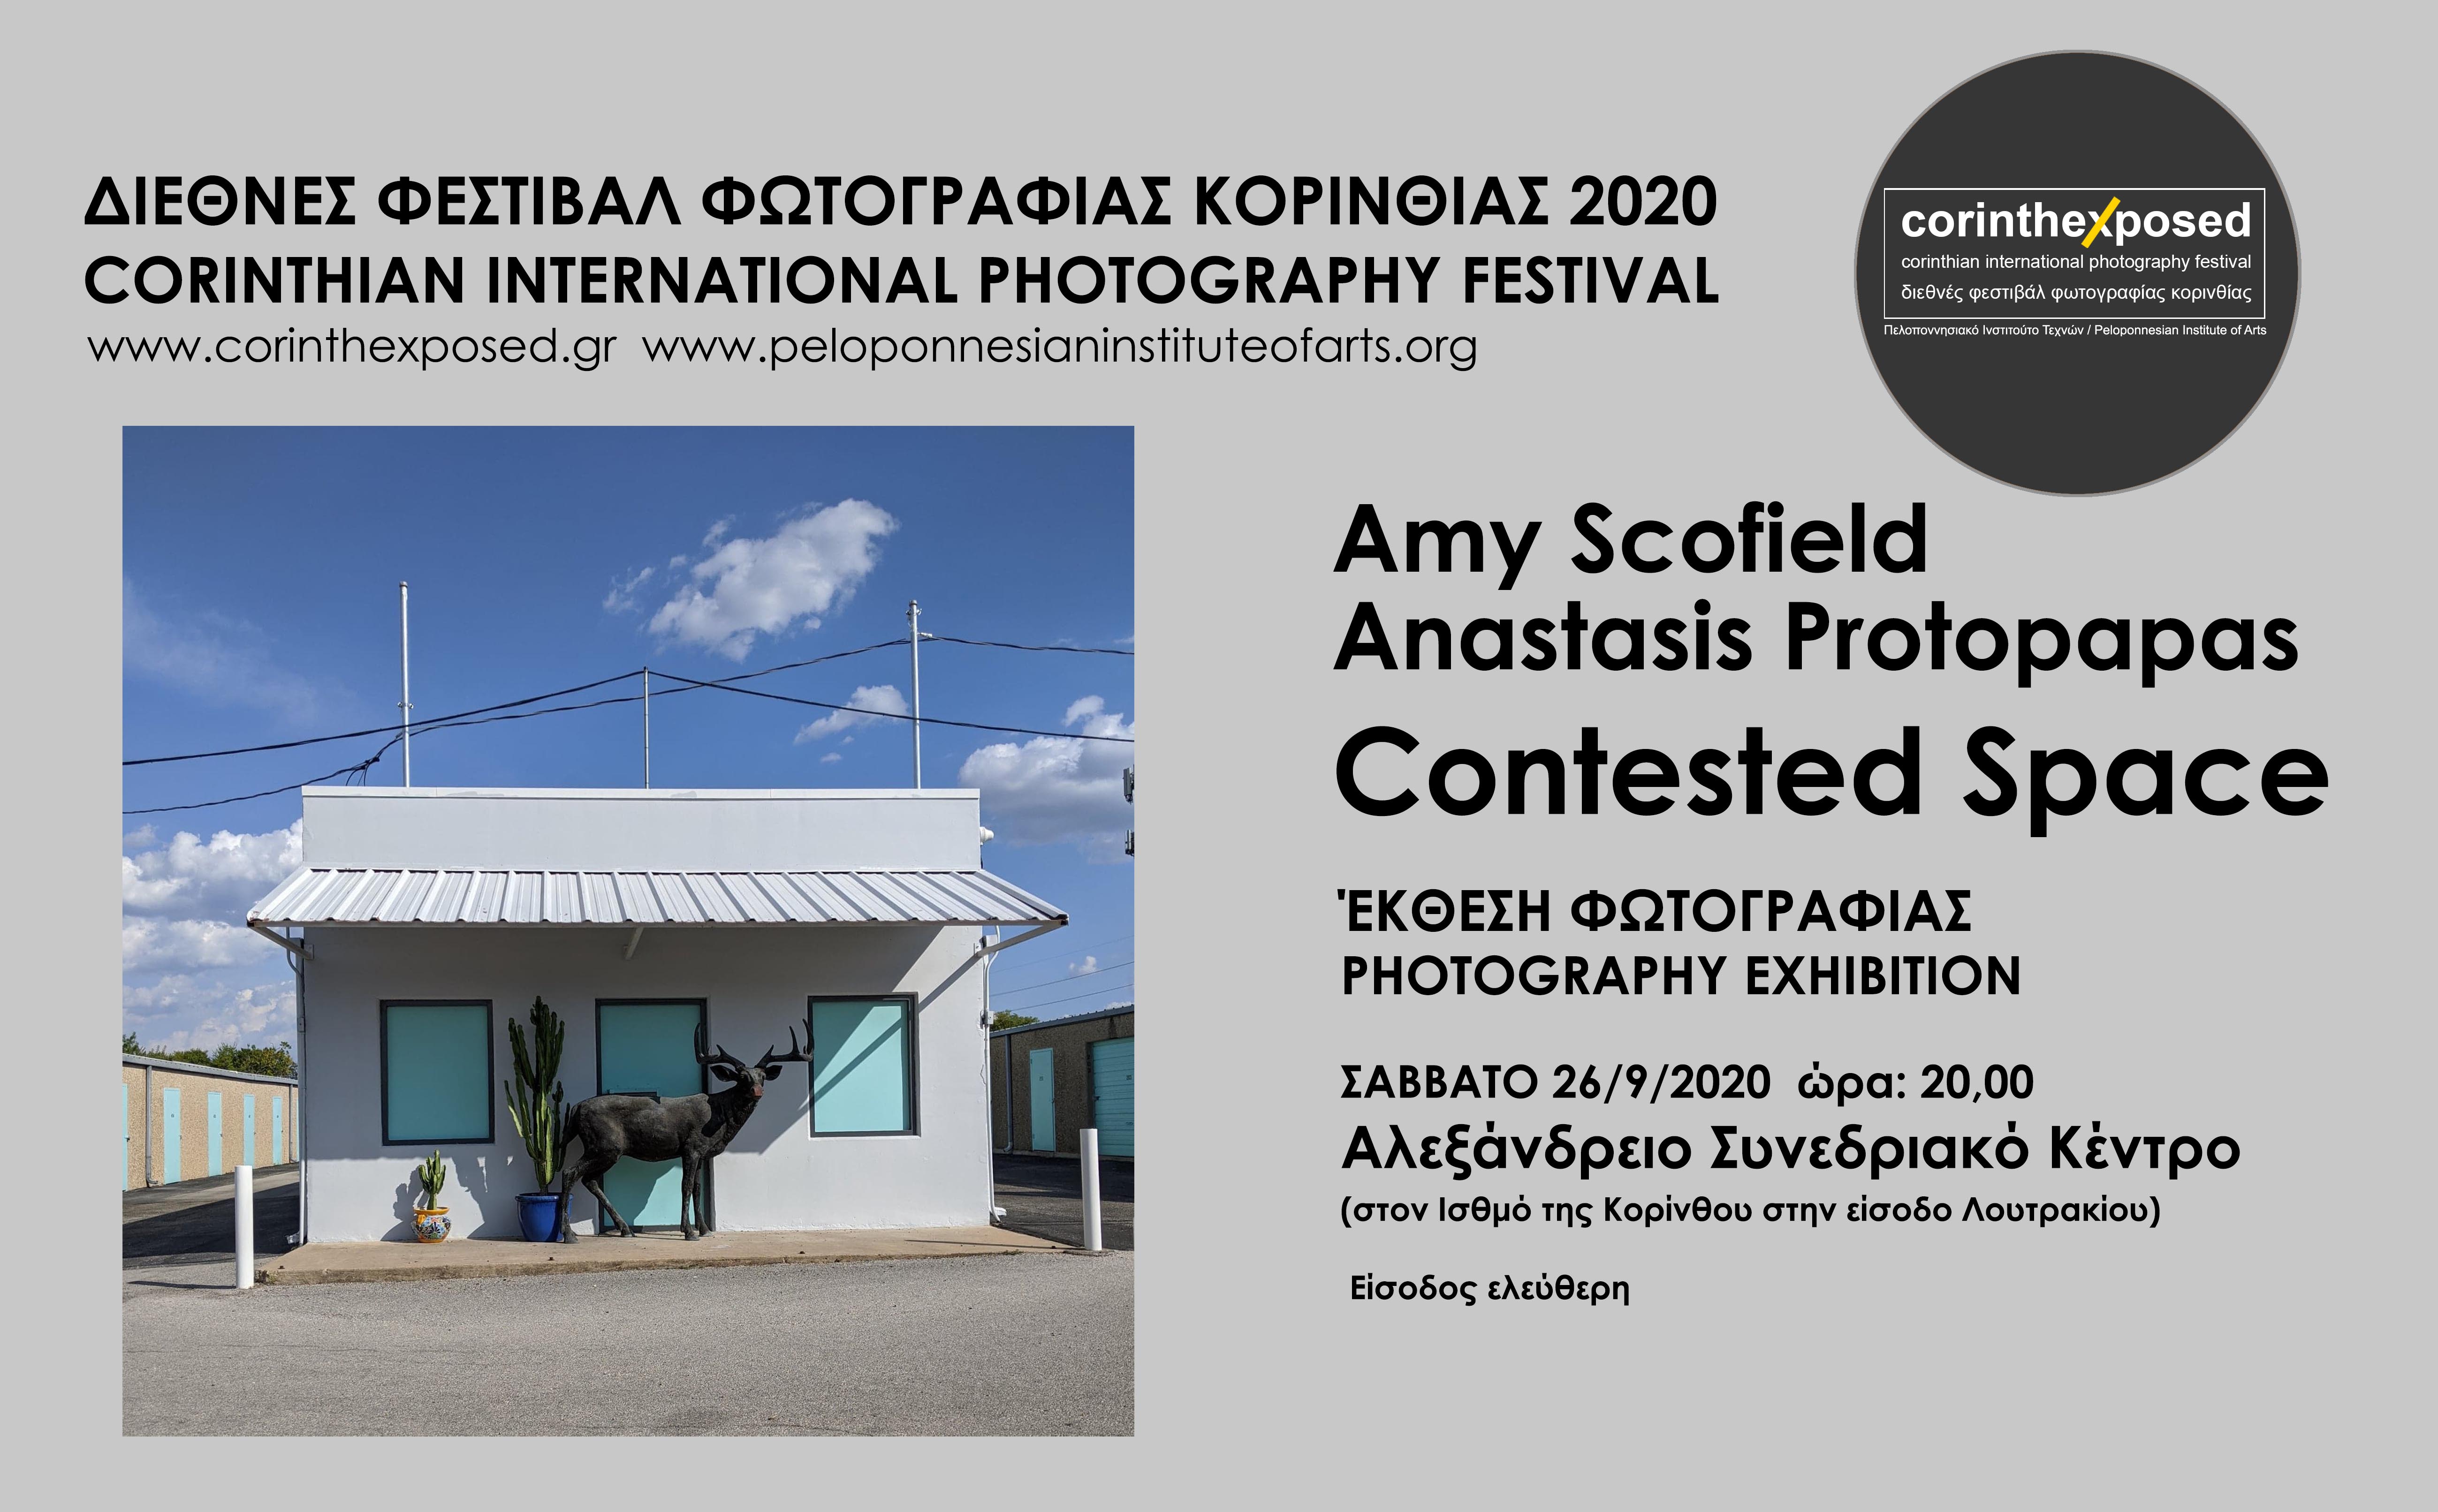 Δελτίο τύπου - Έκθεση φωτογραφίας της Amy Scofield και του Anastasis Protopapas με τίτλο "Contested Space"